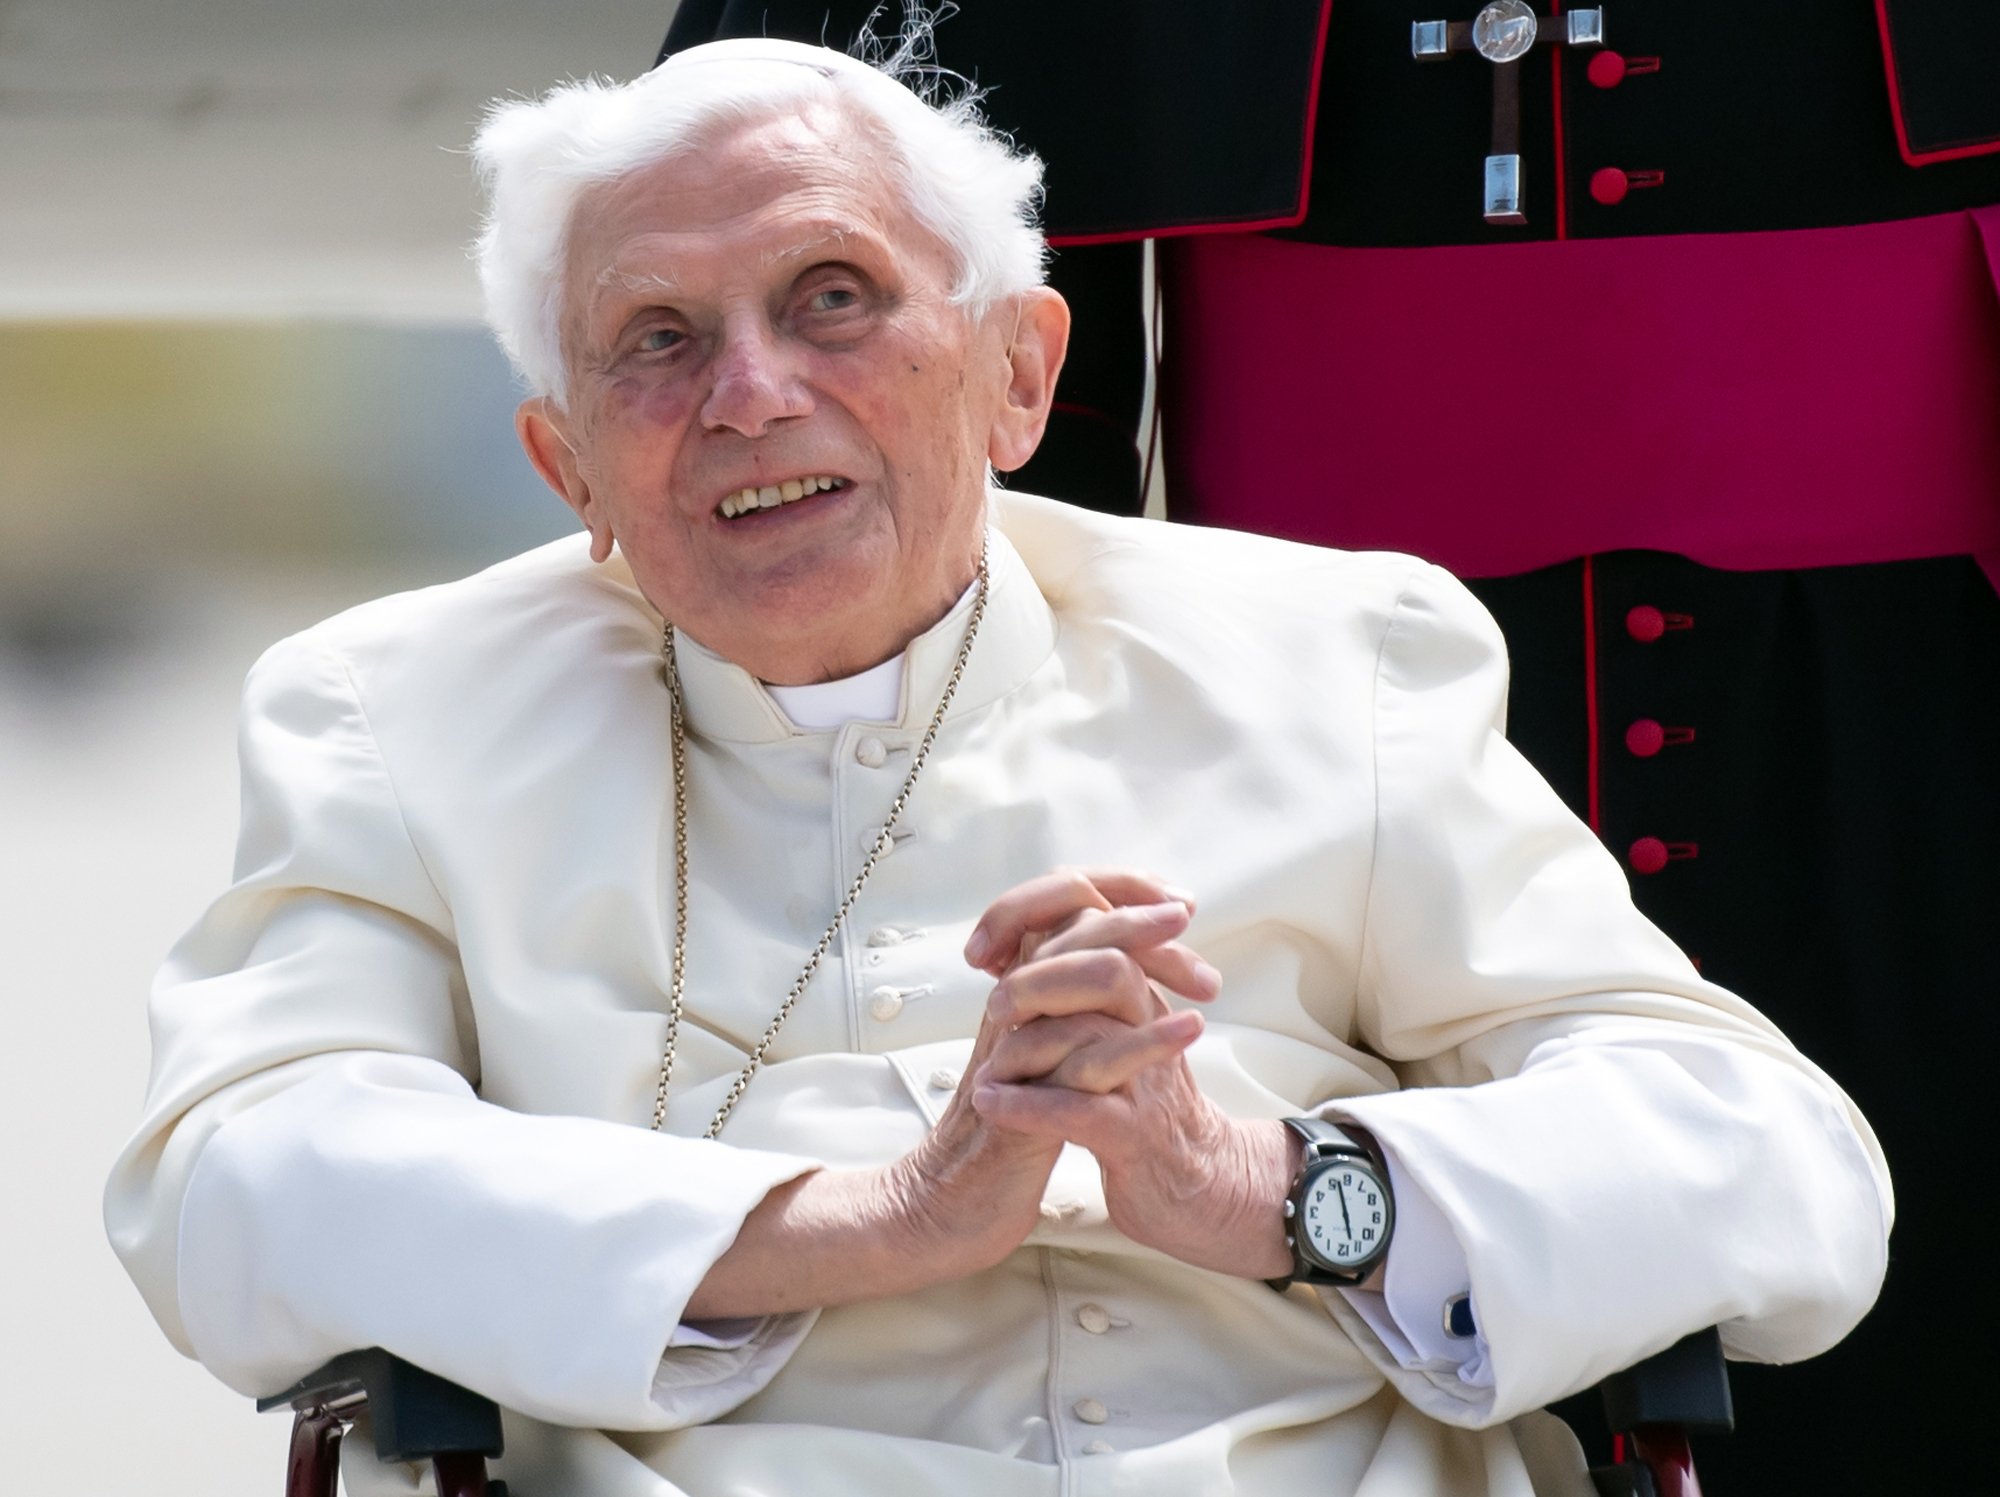 El papa Francisco, preocupado por la salud de Benedicto XVI: "Está muy enfermo"